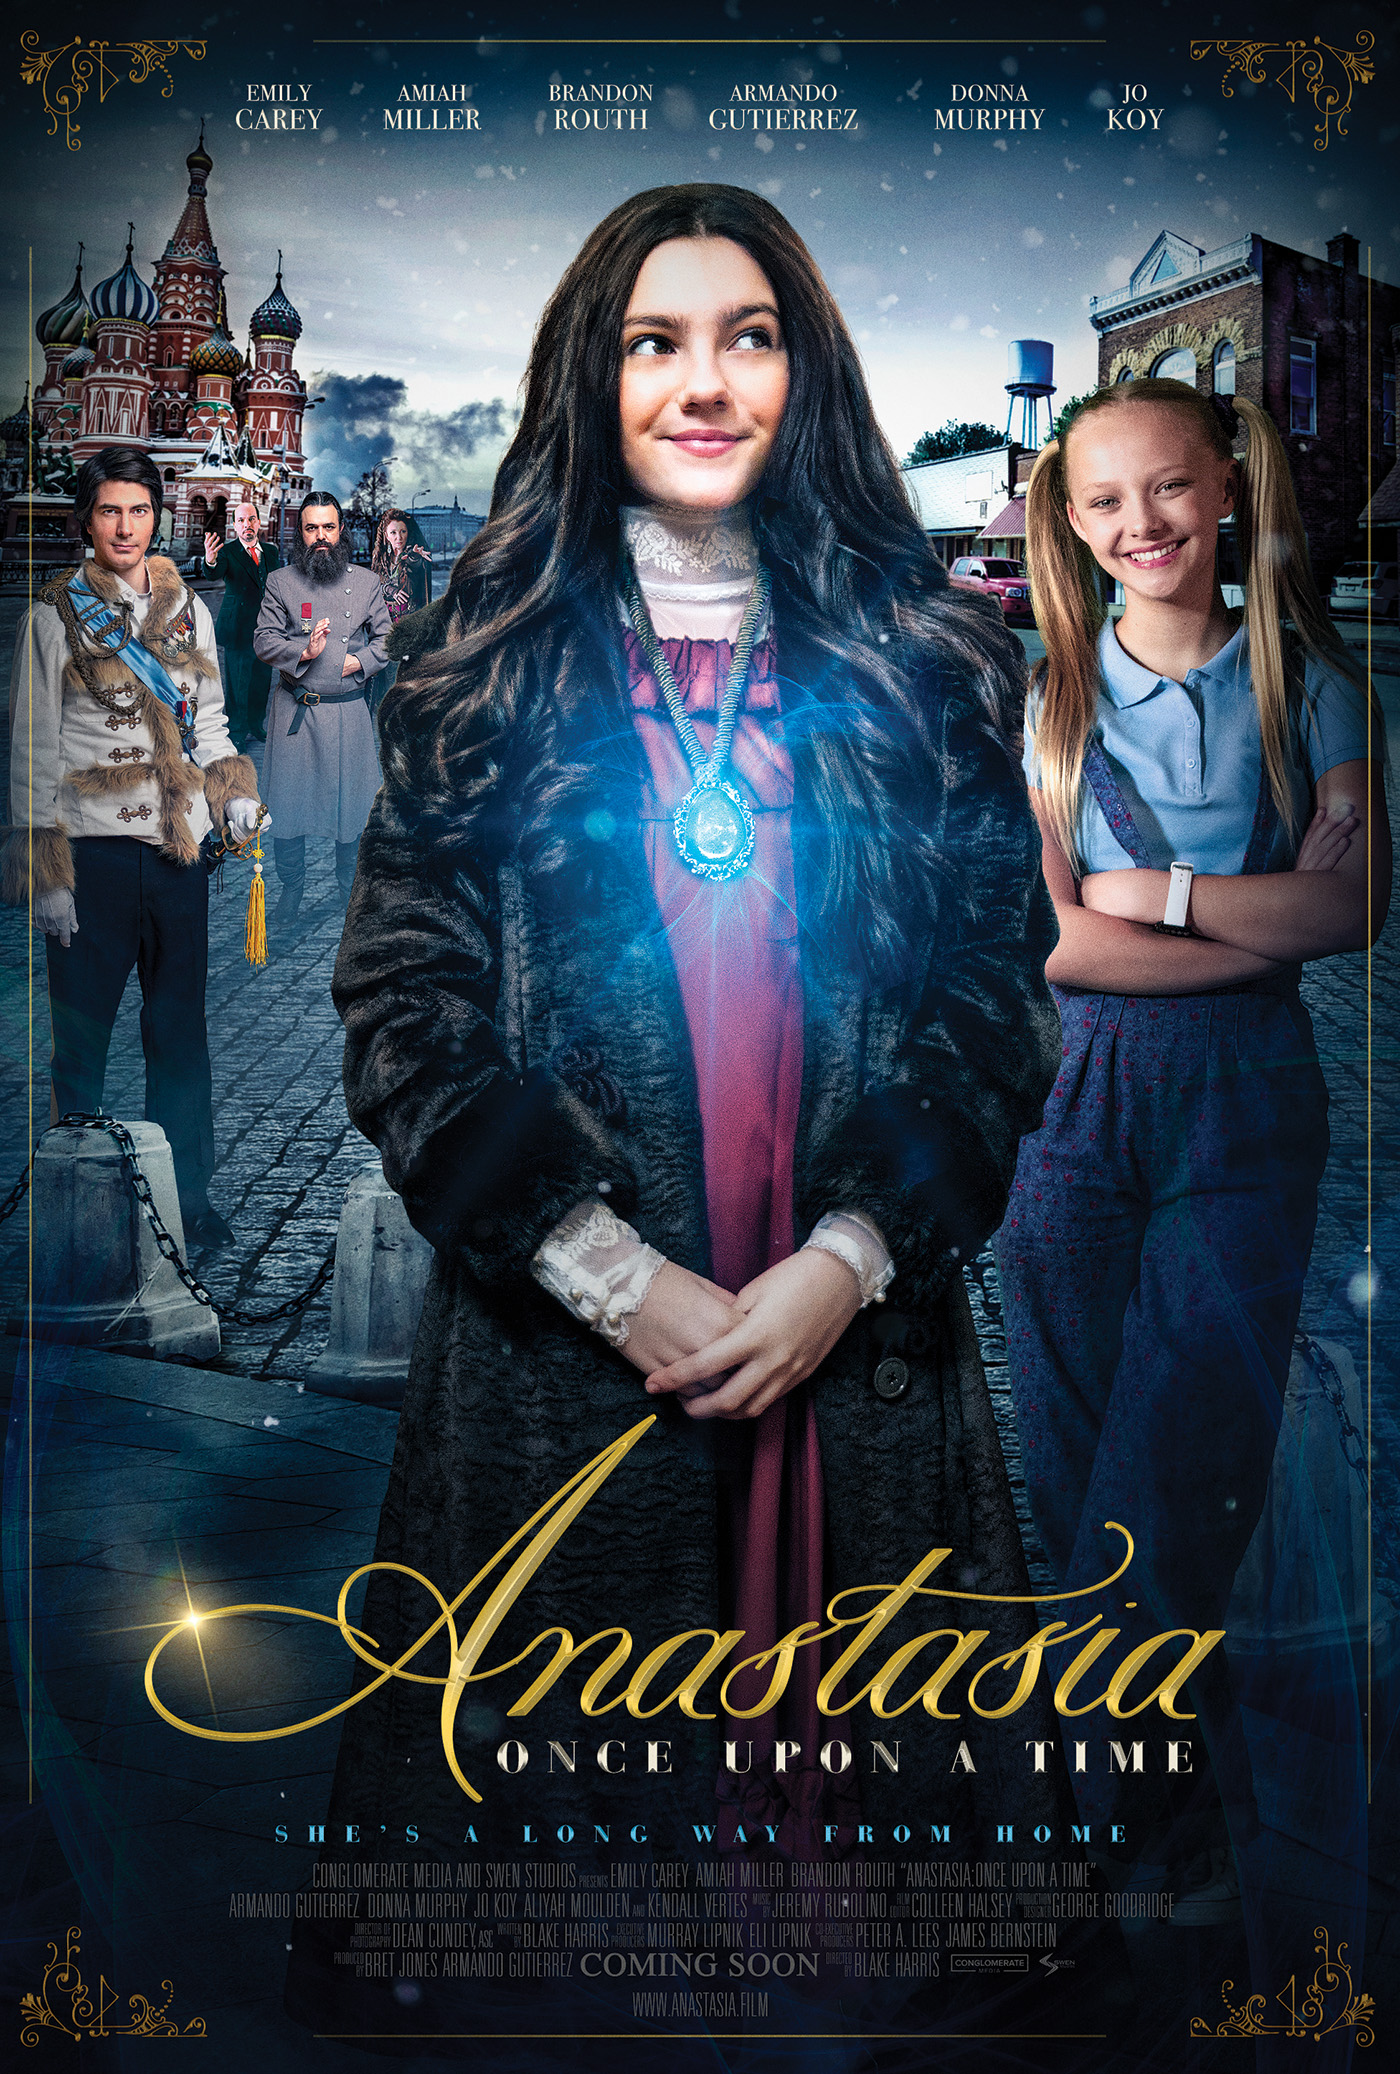 Anastasia Once Upon A Time 2019 18437 Poster.jpg